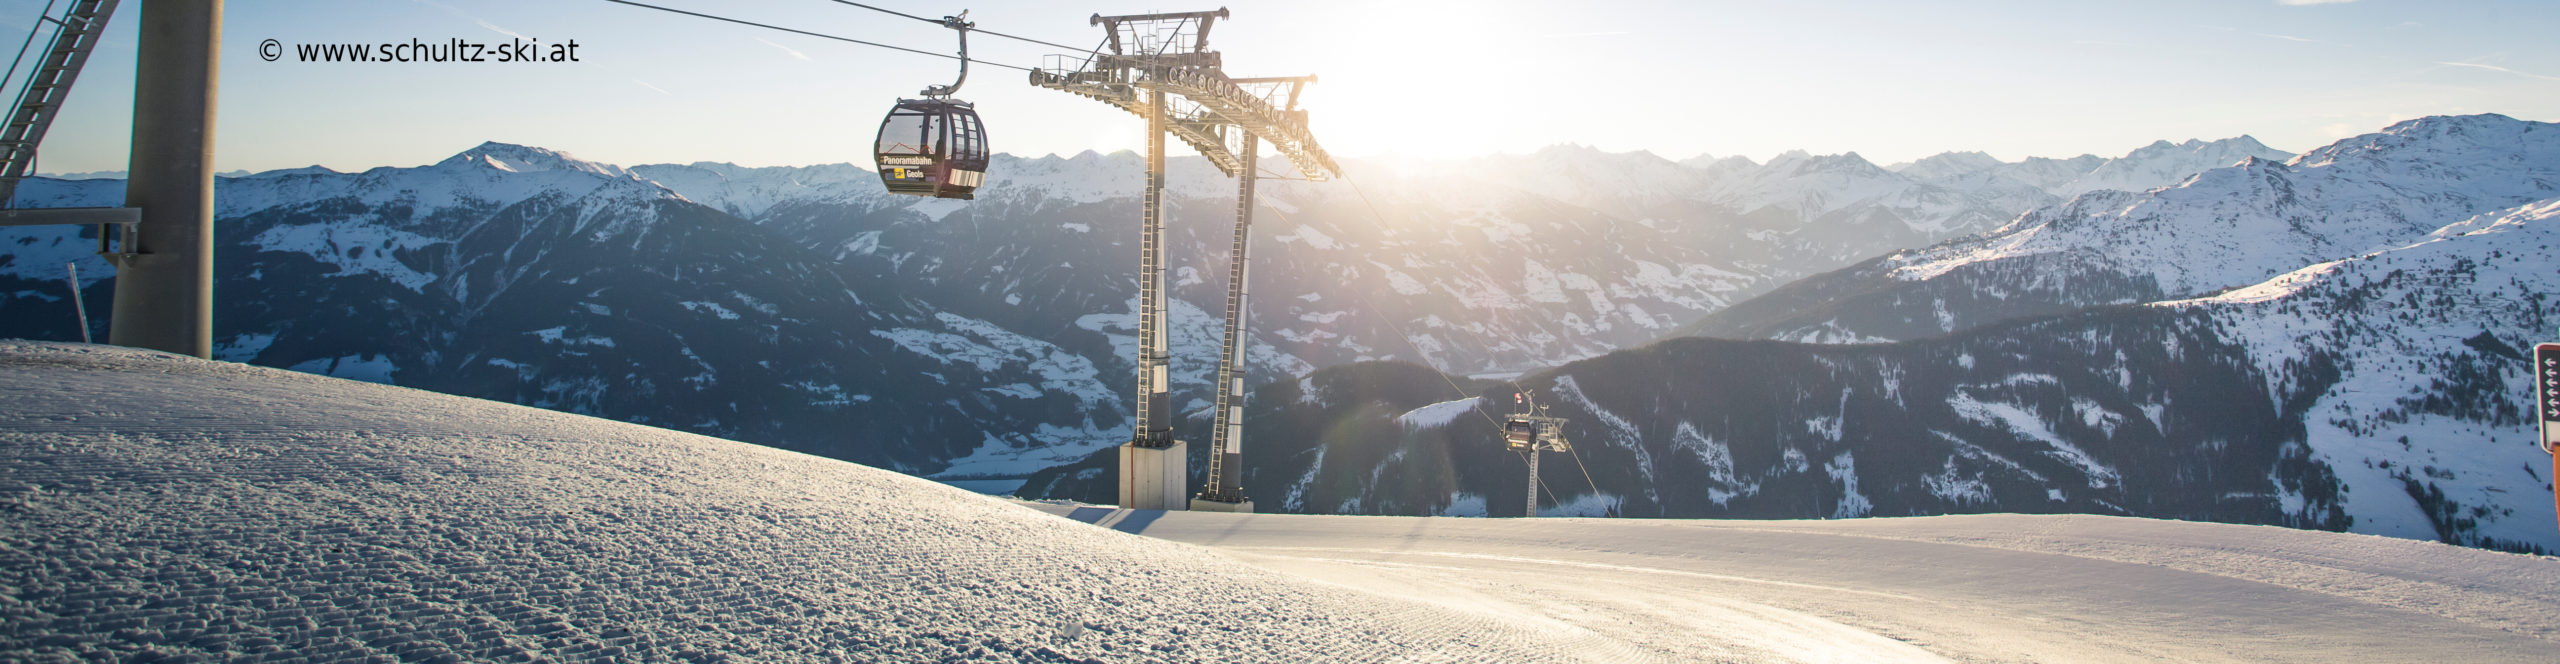 ZILLERTAL – verlängertes Skiwochenende mit 4 Skitagen – in den Faschingsferien – Hotel in Strass 